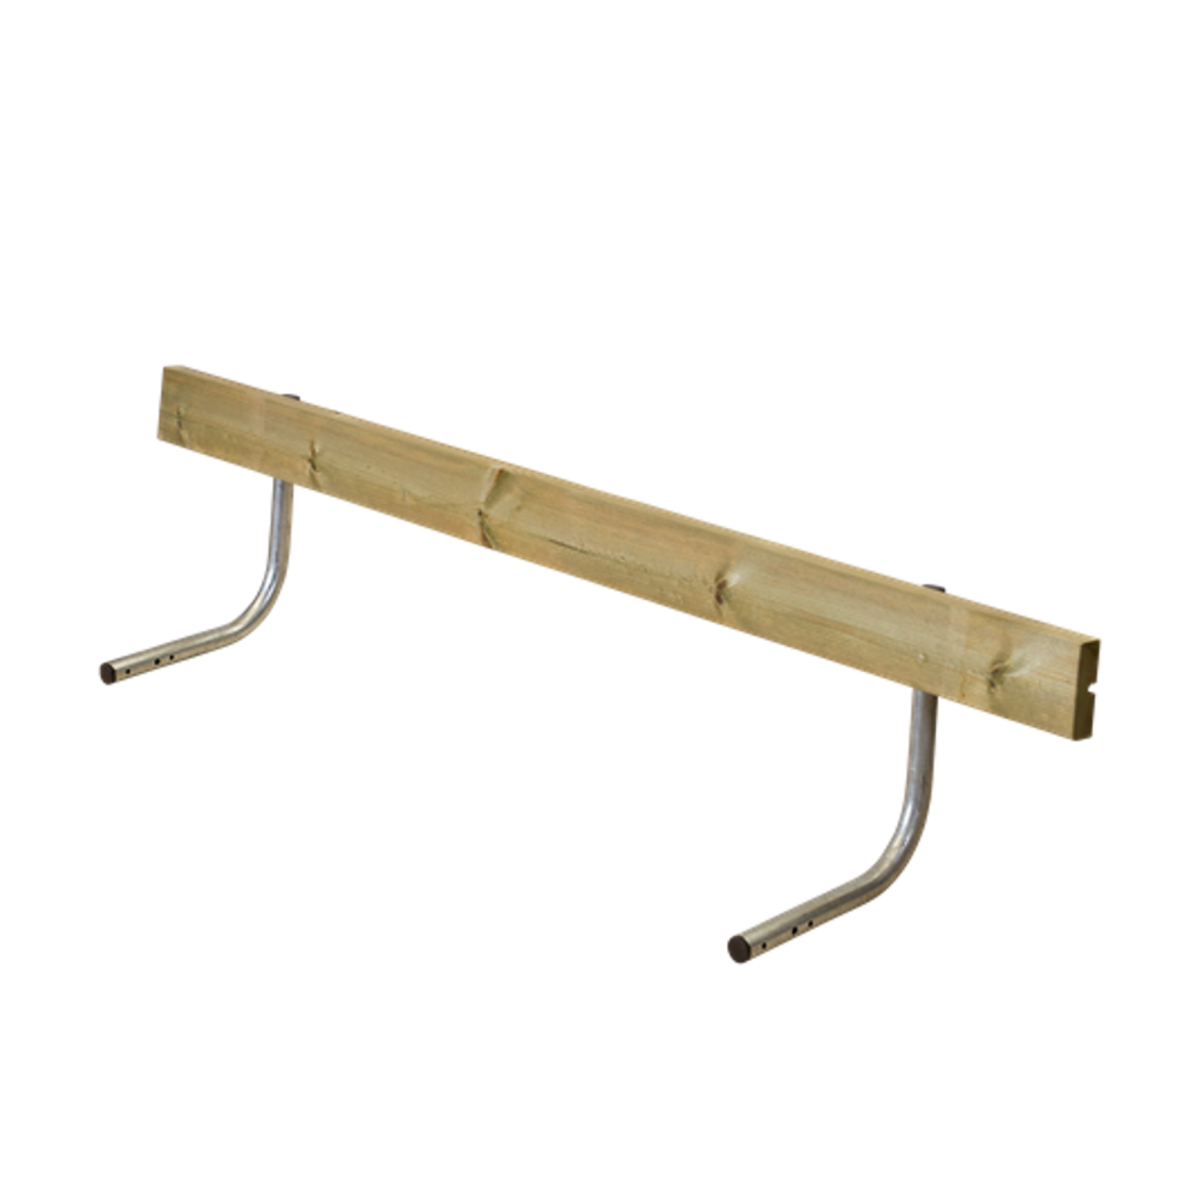 Rückenlehne für Picknicktisch, Gartentisch, Gartenmöbel  CLASSIC - 177cm aus KDI Holz - Farbe natur